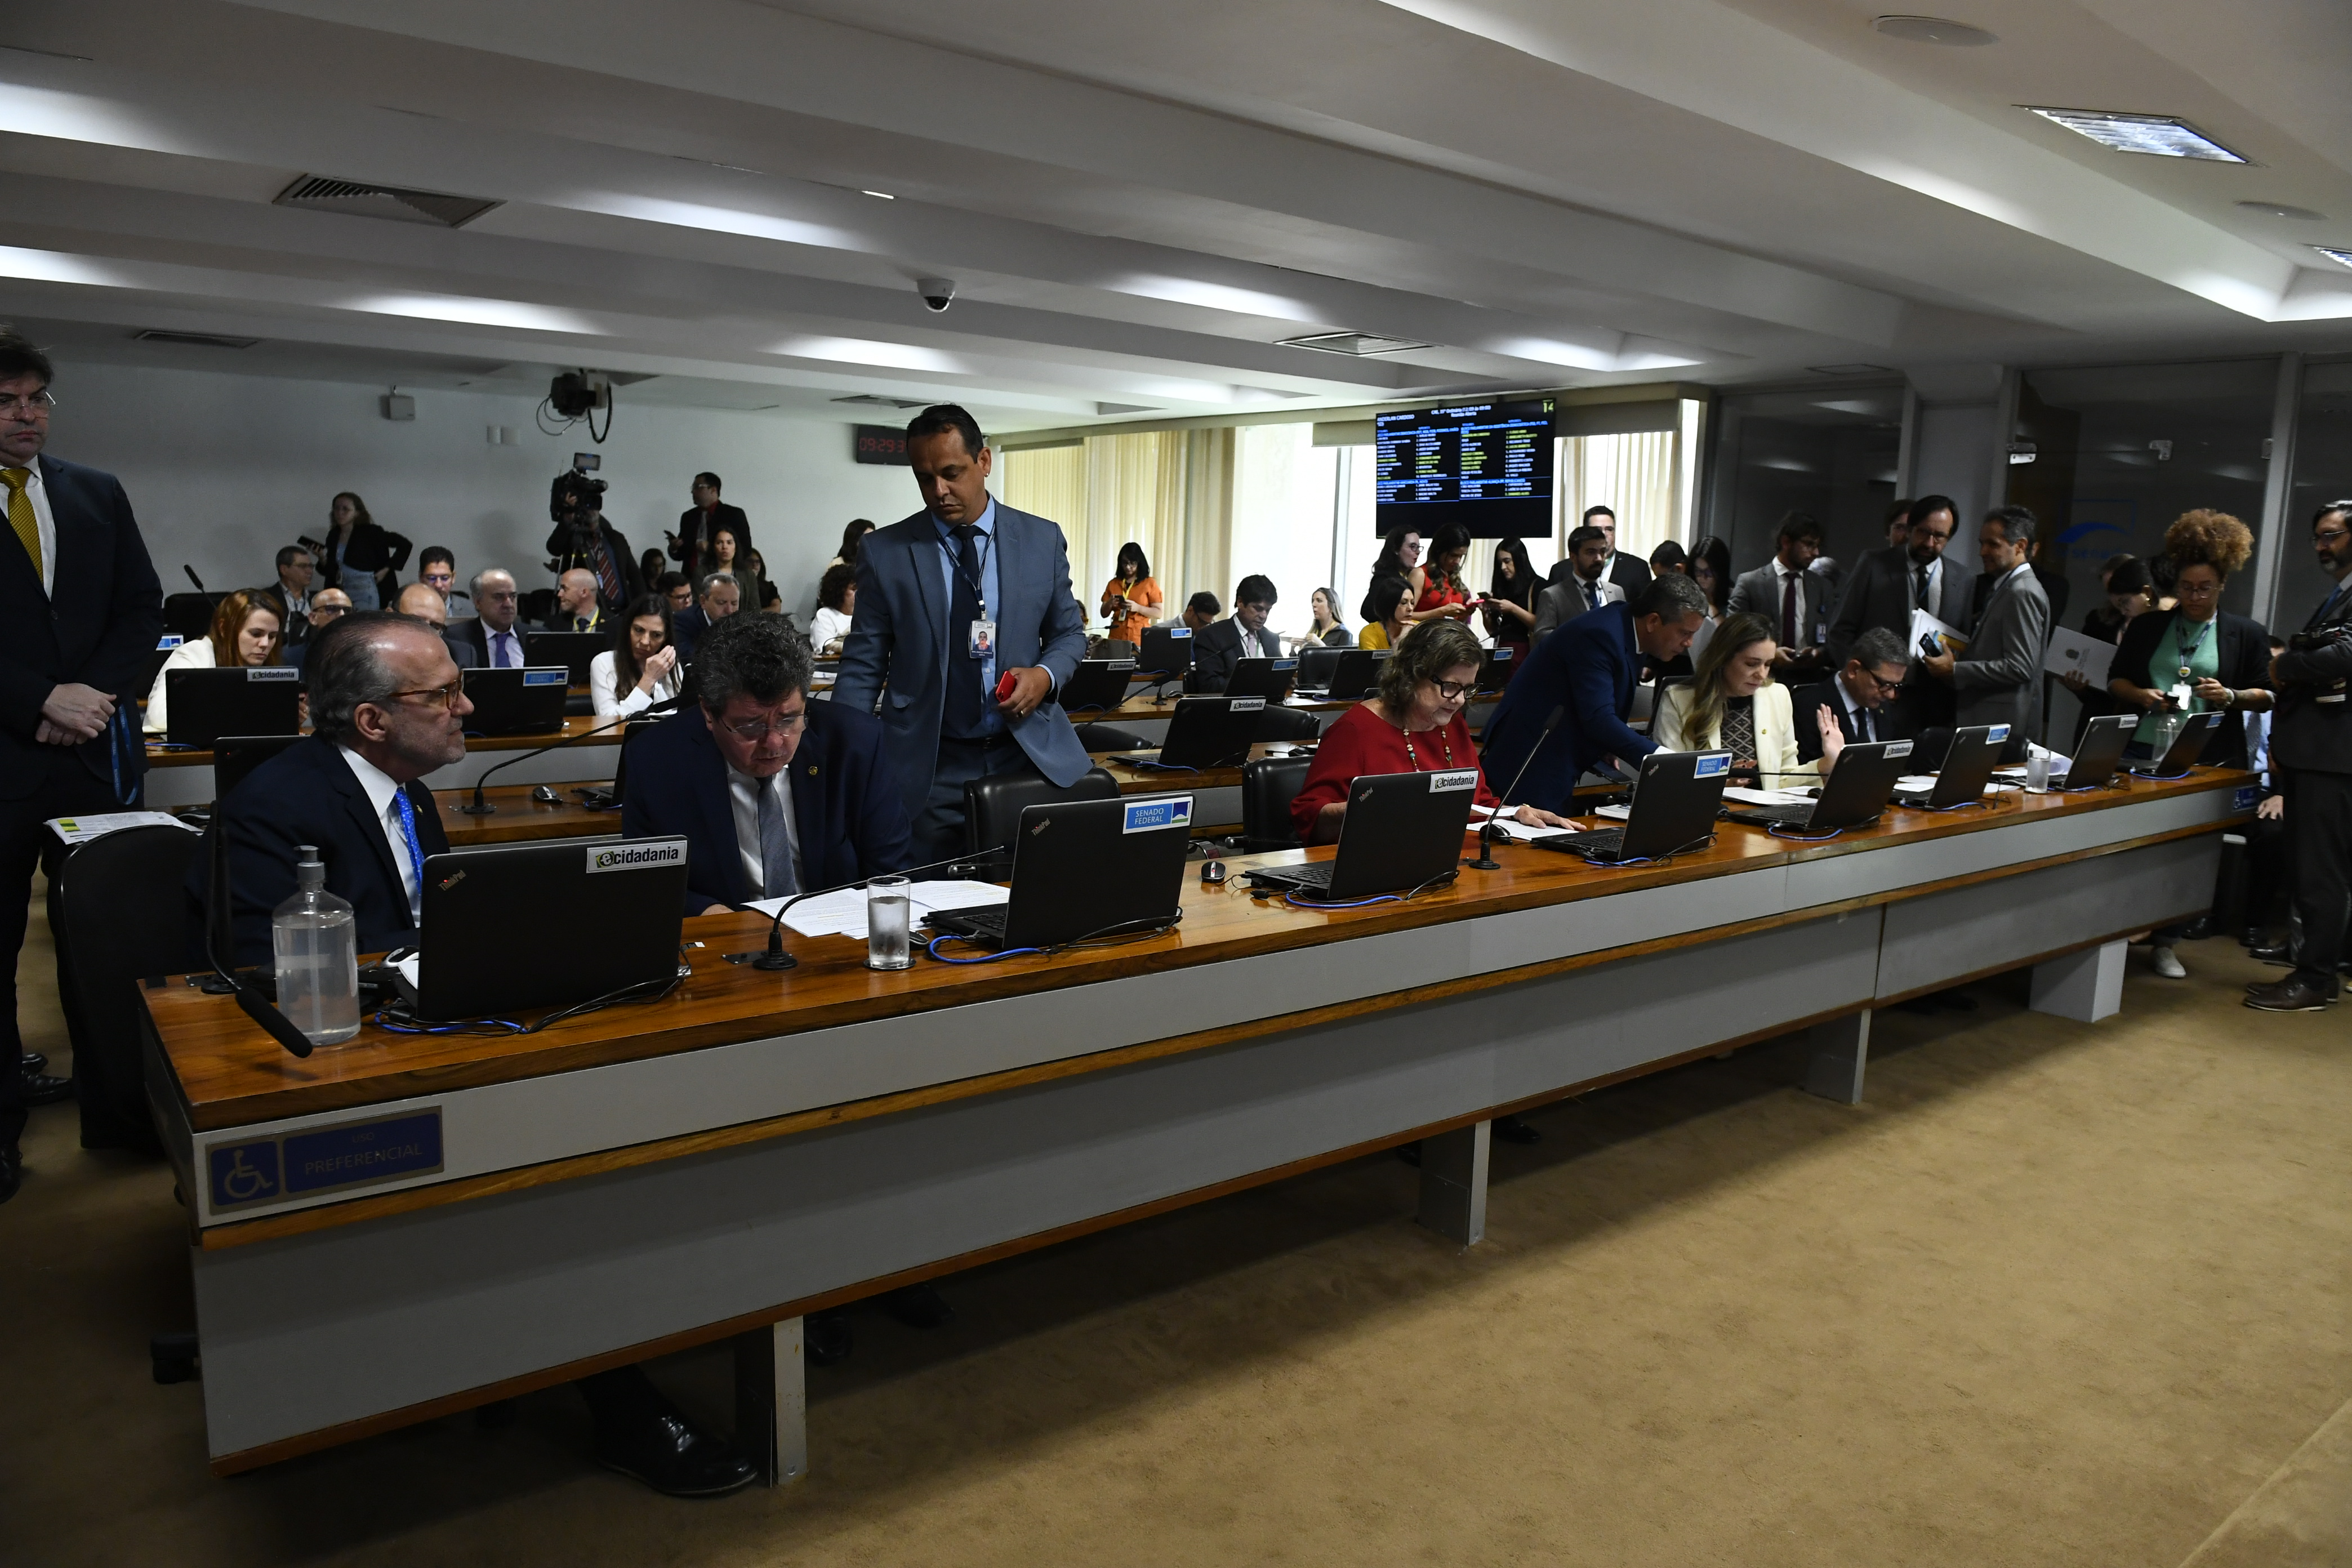 Bancada:
senador Fernando Dueire (MDB-PE); 
senador Fernando Farias (MDB-AL); 
senadora Teresa Leitão (PT-PE); 
senadora Augusta Brito (PT-CE); 
senador Rogério Carvalho (PT-SE).